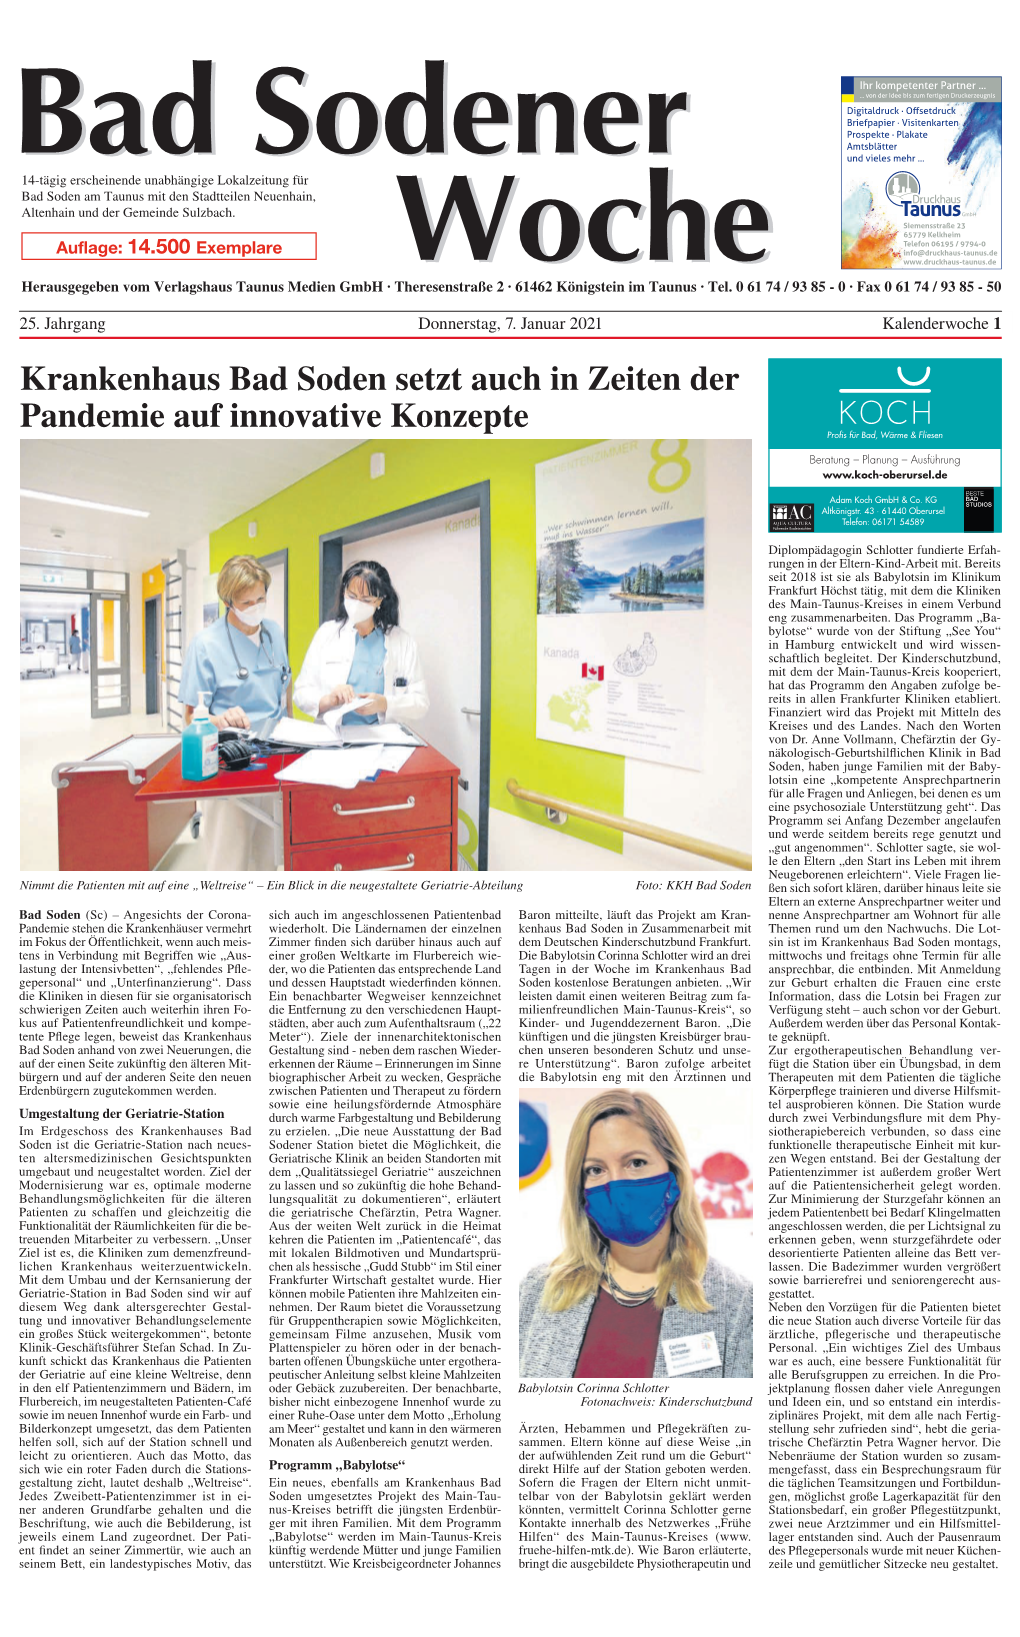 Krankenhaus Bad Soden Setzt Auch in Zeiten Der Pandemie Auf Innovative Konzepte